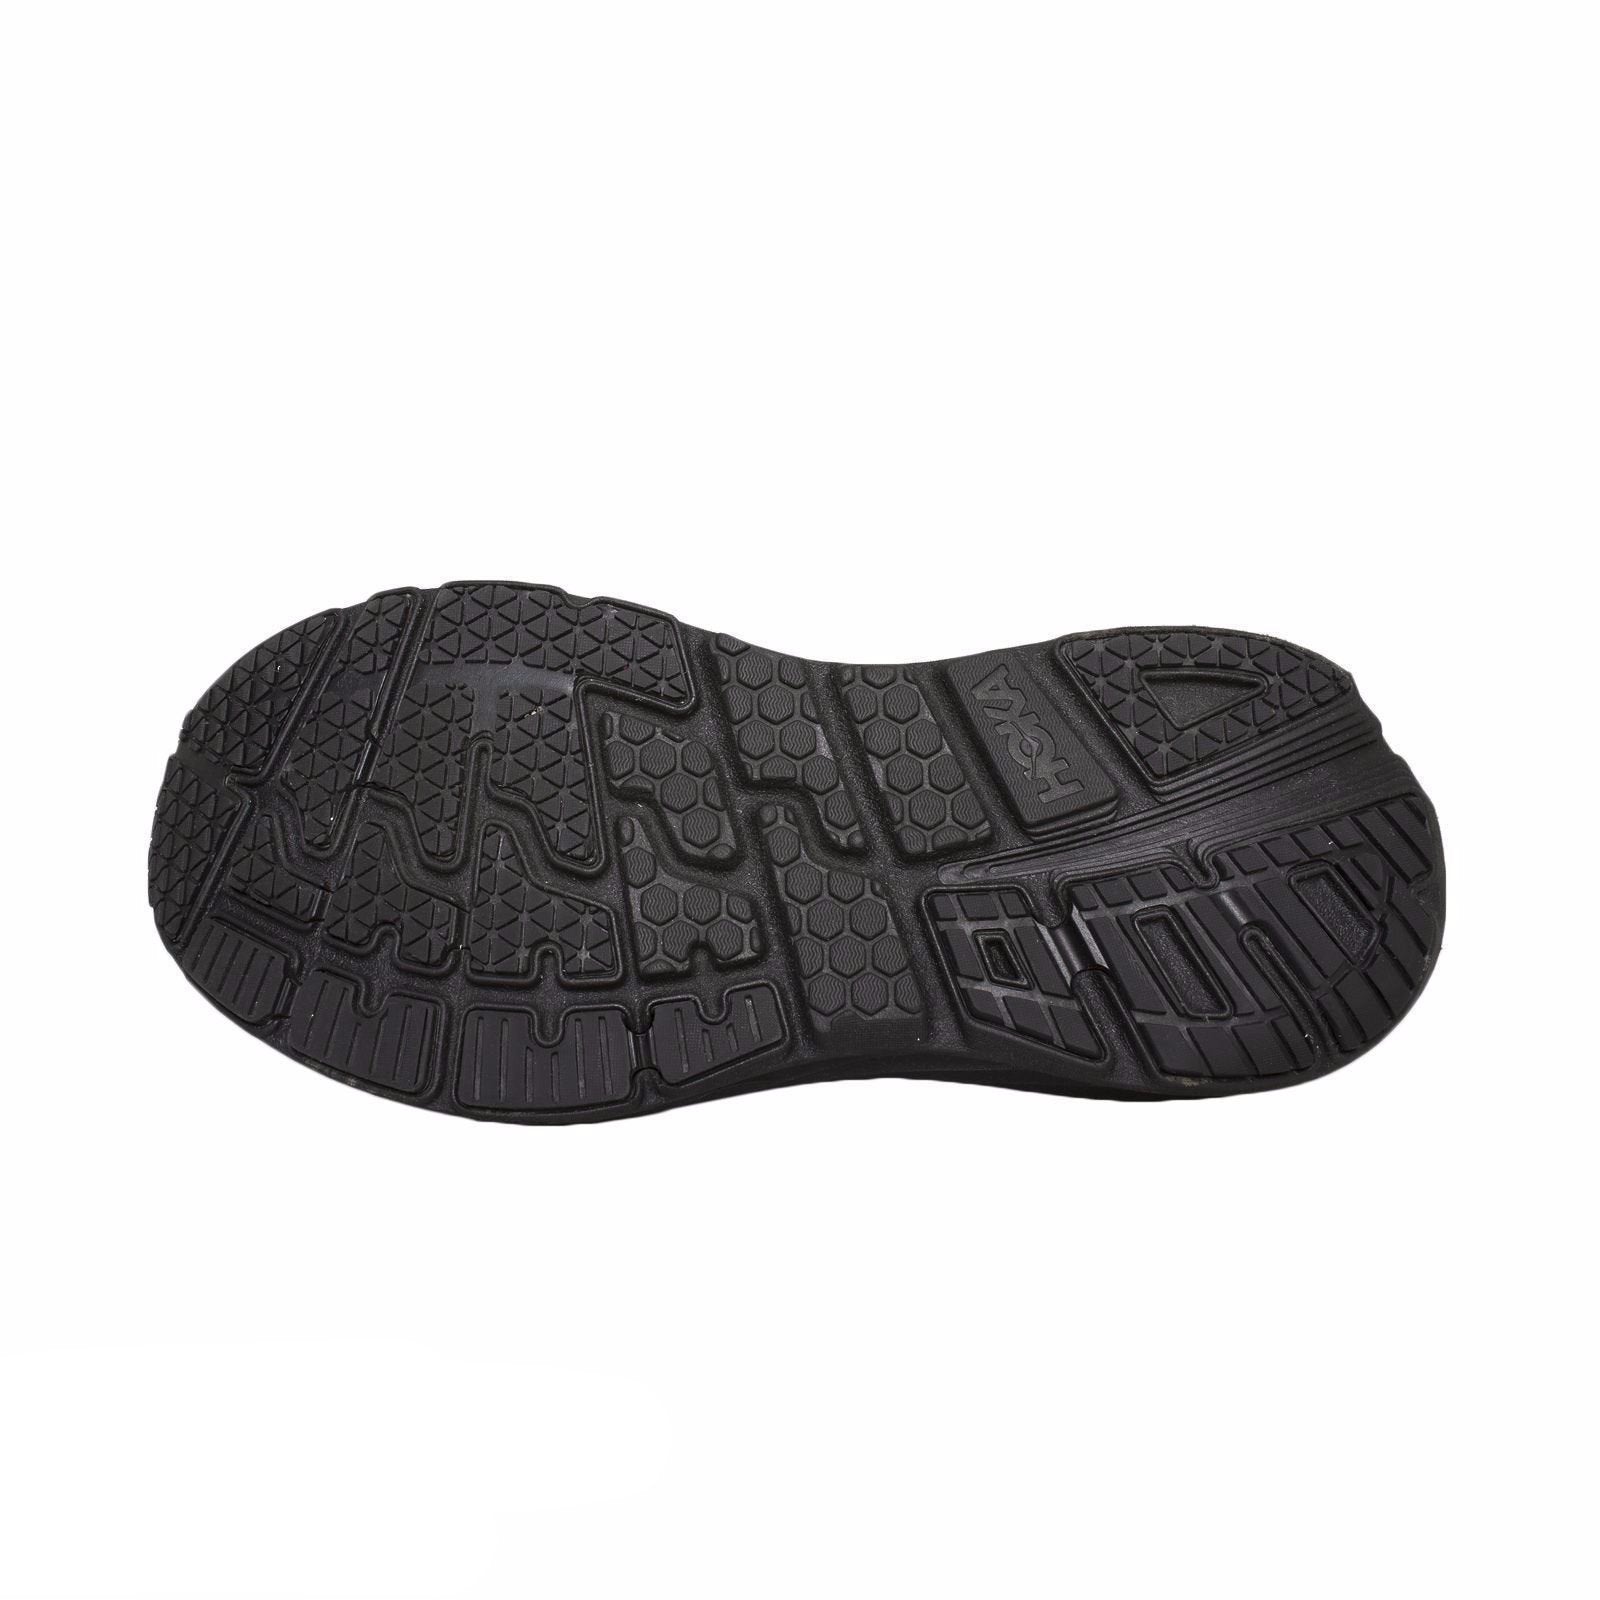 Hoka One One Bondi 5 Black Running Shoes - Women's – MyCozyBoots